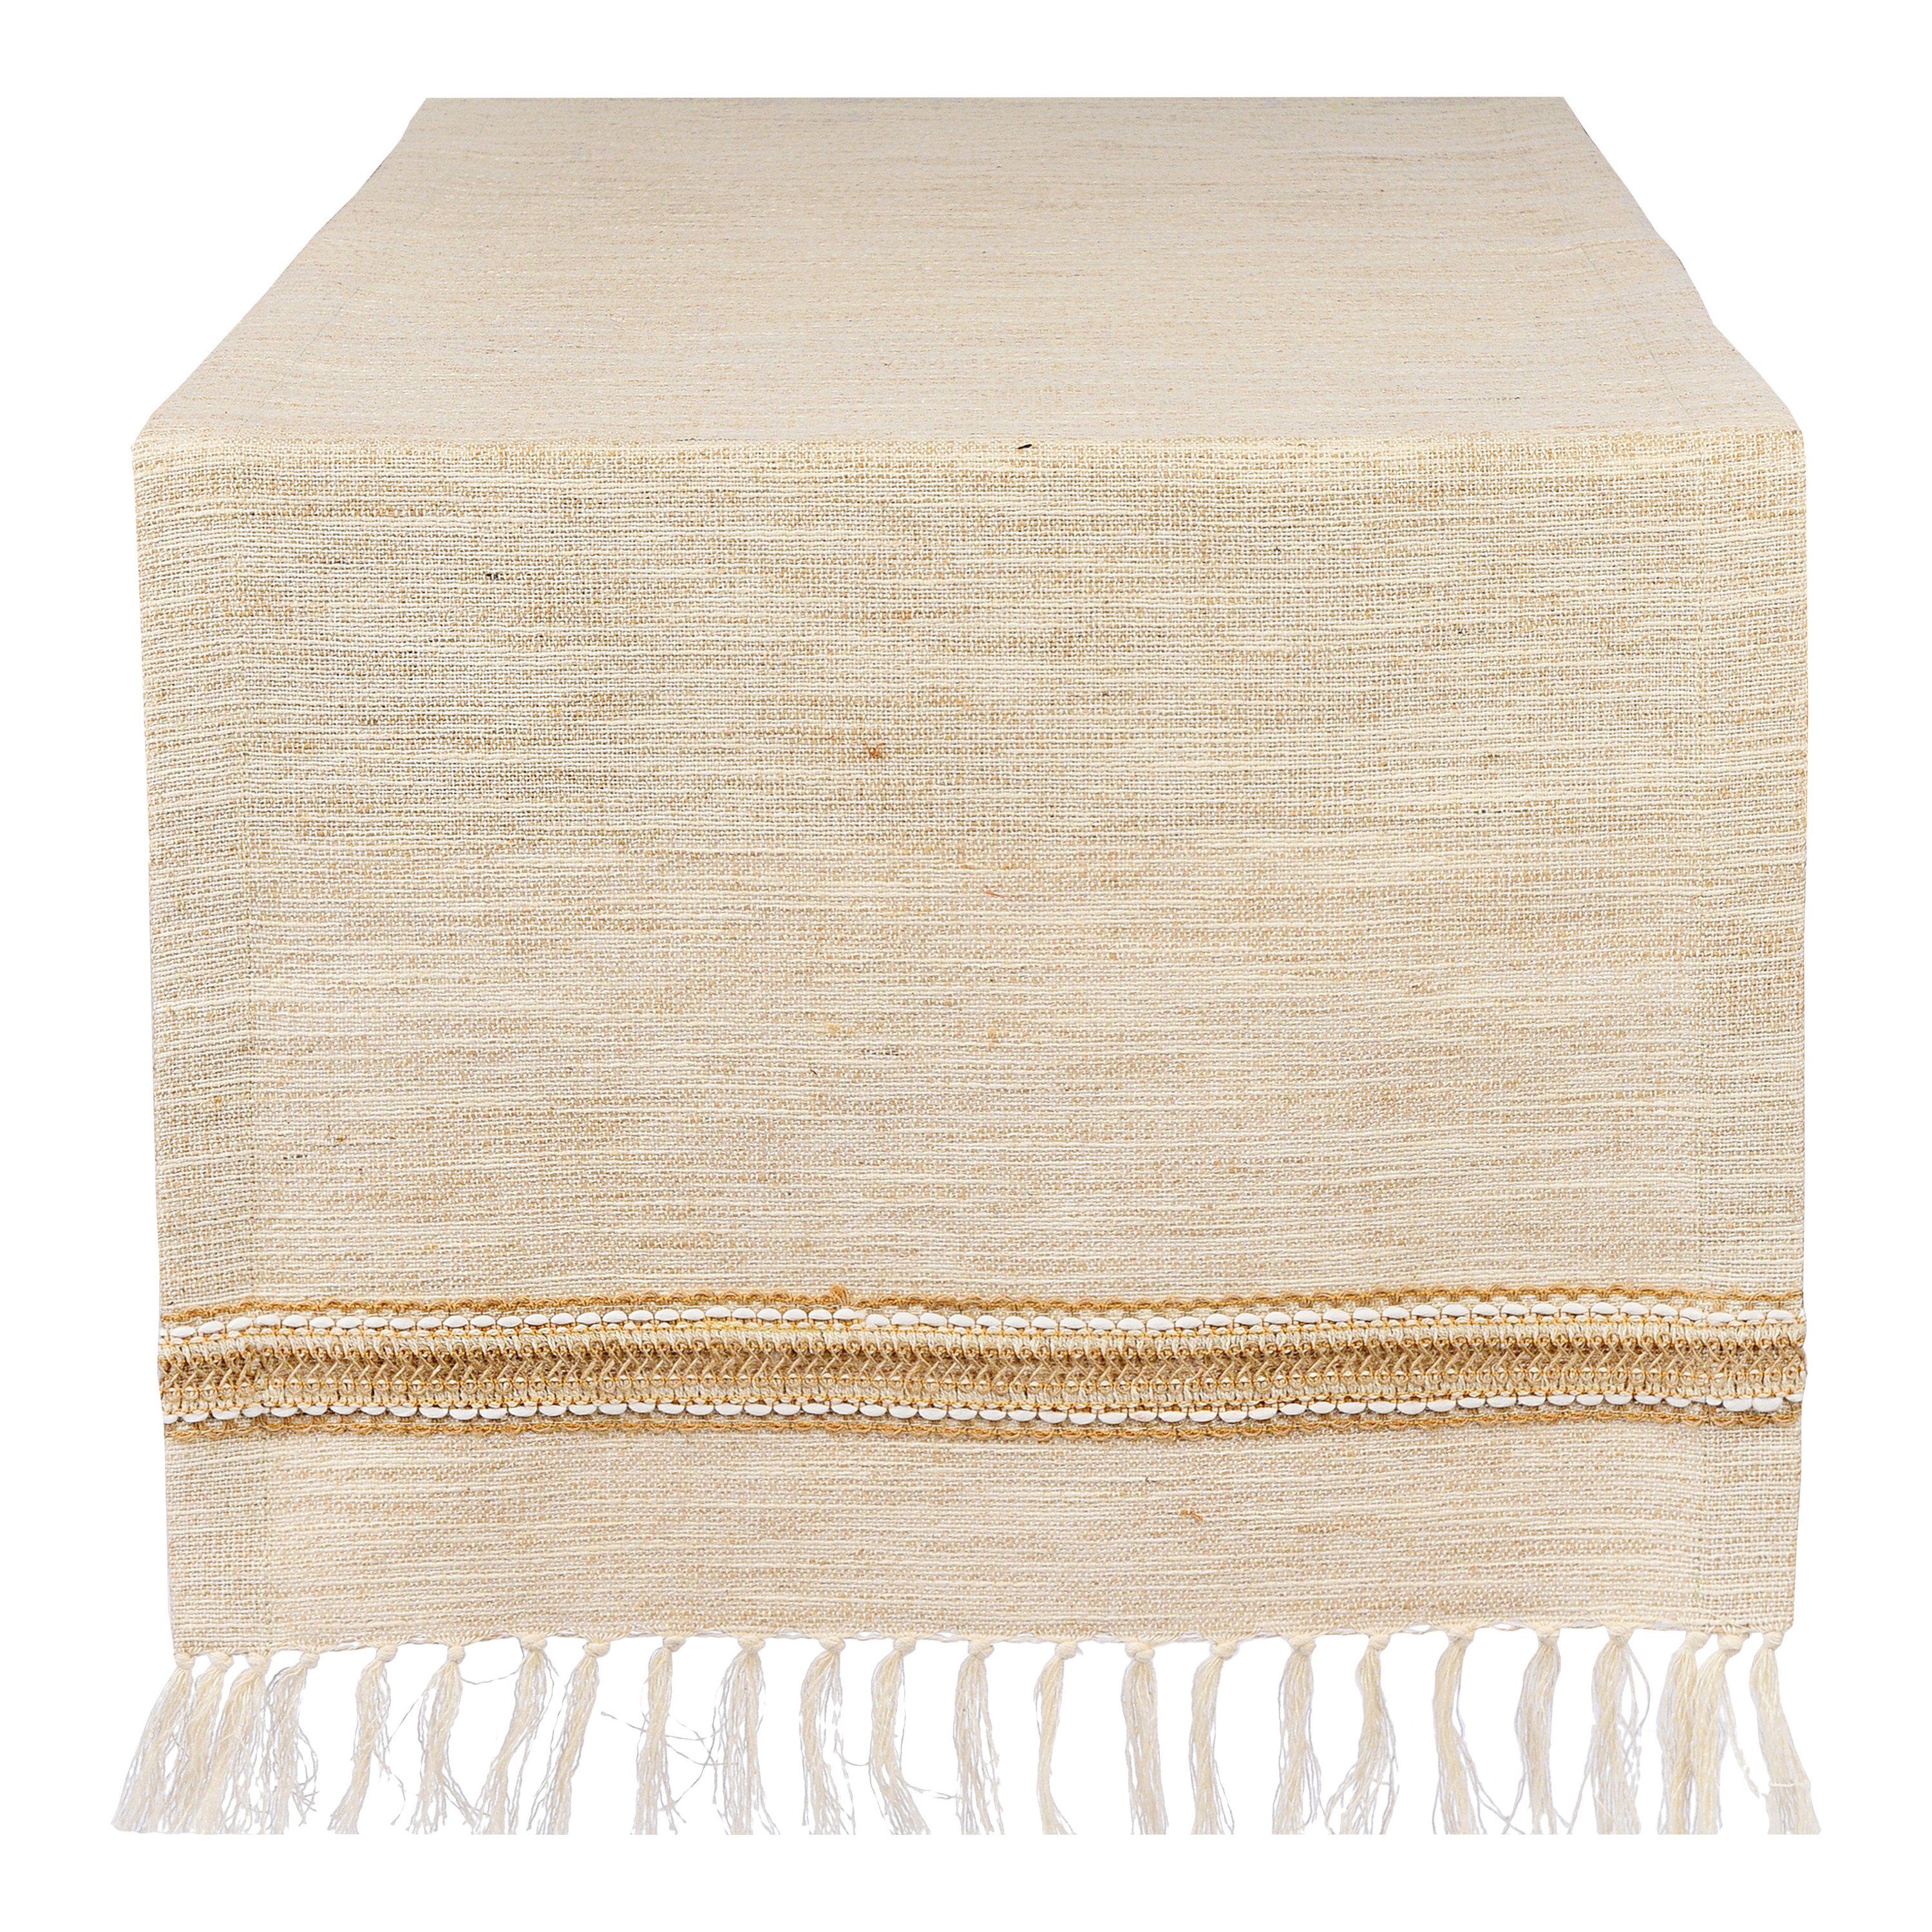 Depot Tischdecke Tischläufer Structure (Packung, 1 Stück Tischläufer), aus Baumwolle, L 150 Zentimeter, B 40 Zentimeter